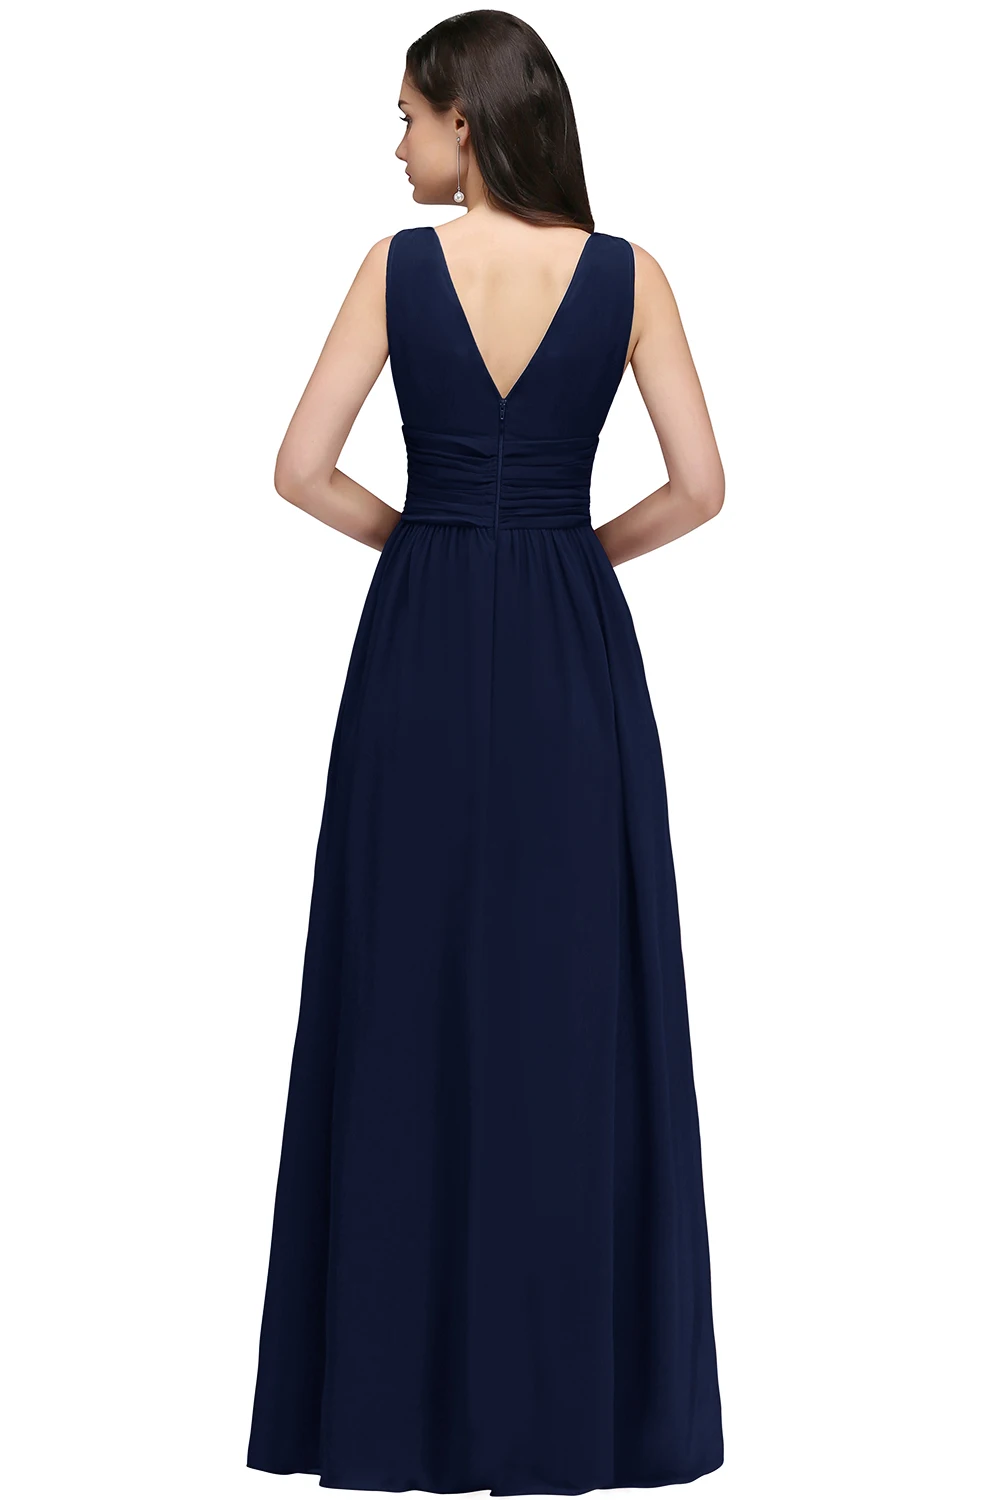 Вечернее платье es длинное короткое на одно плечо до 35 $ Дешевое шифоновое вечернее платье 2019 Формальное вечерние платье для вечеринки